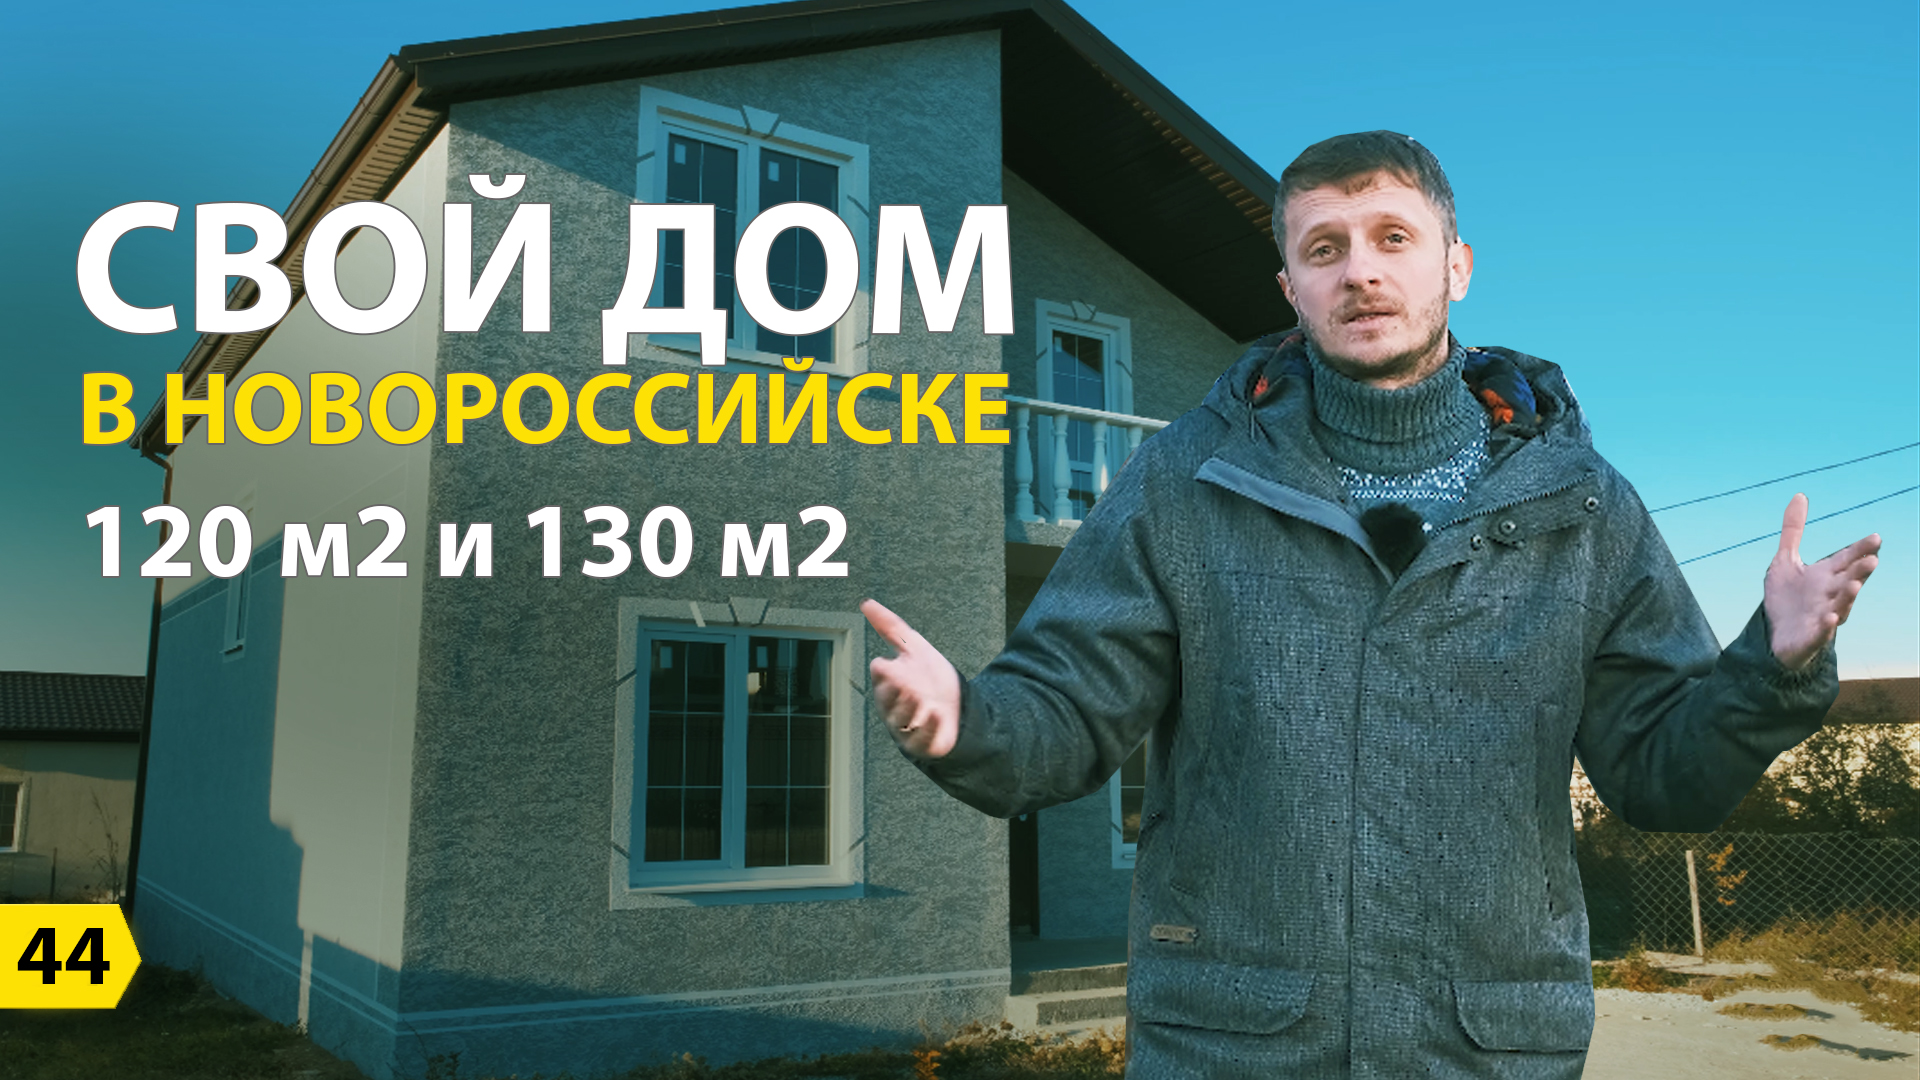 Cвой дом в Новороссийске на 120 м2 и 130 м2